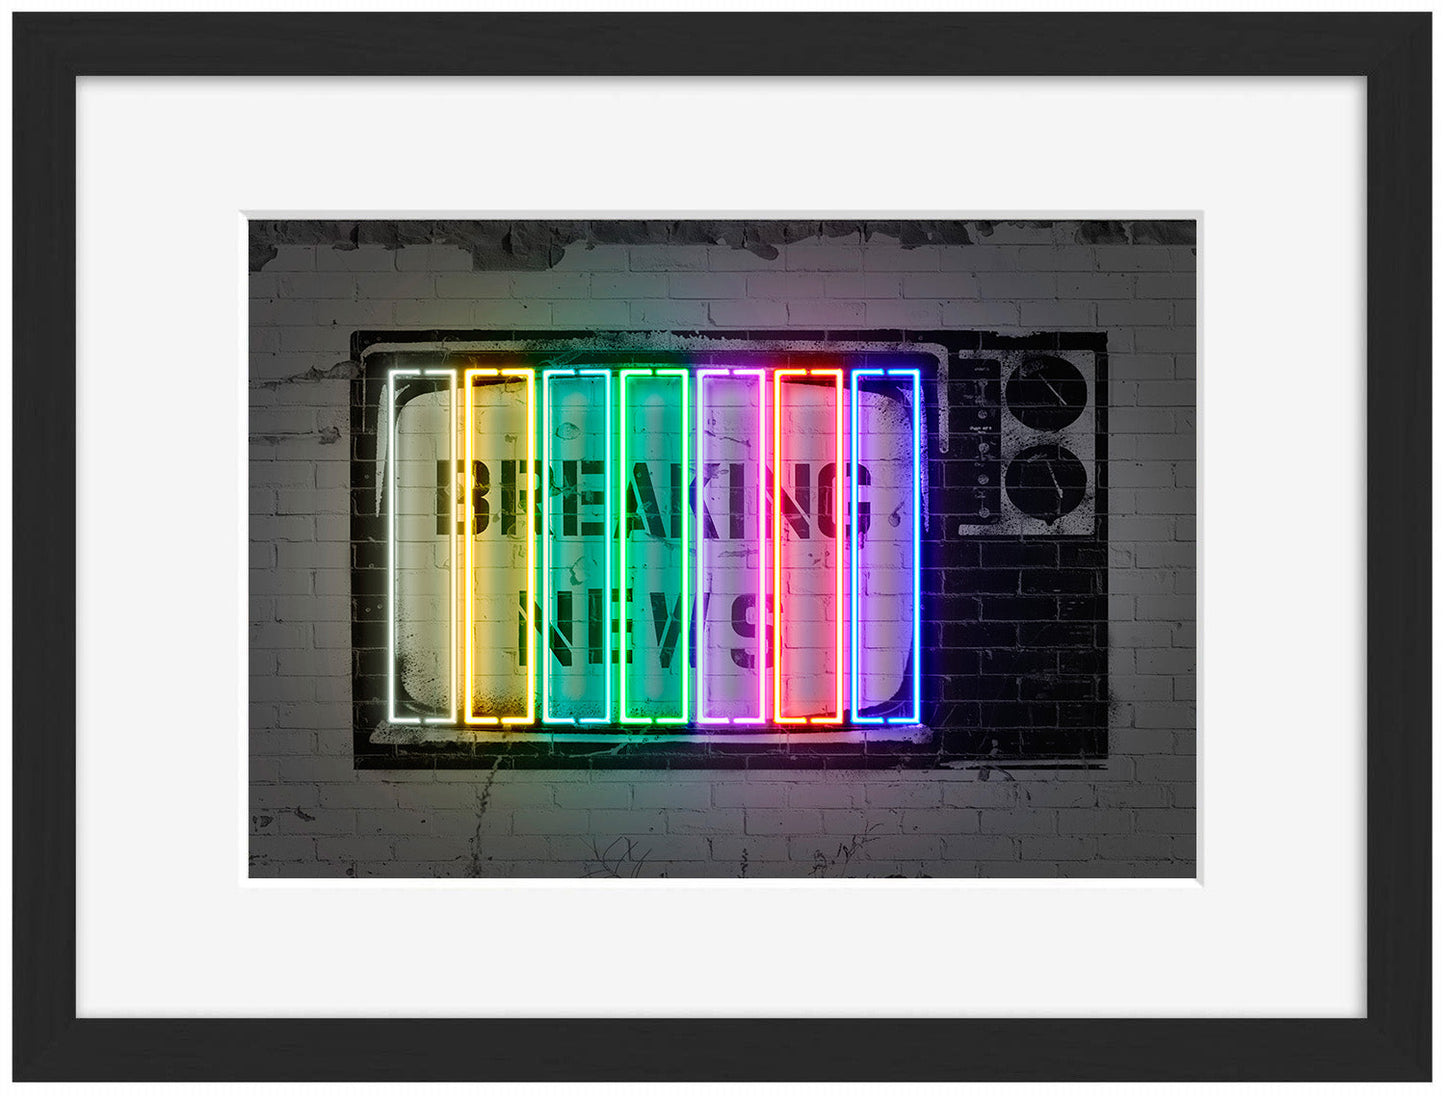 Breaking News-neon-art, print-Framed Print-30 x 40 cm-BLUE SHAKER